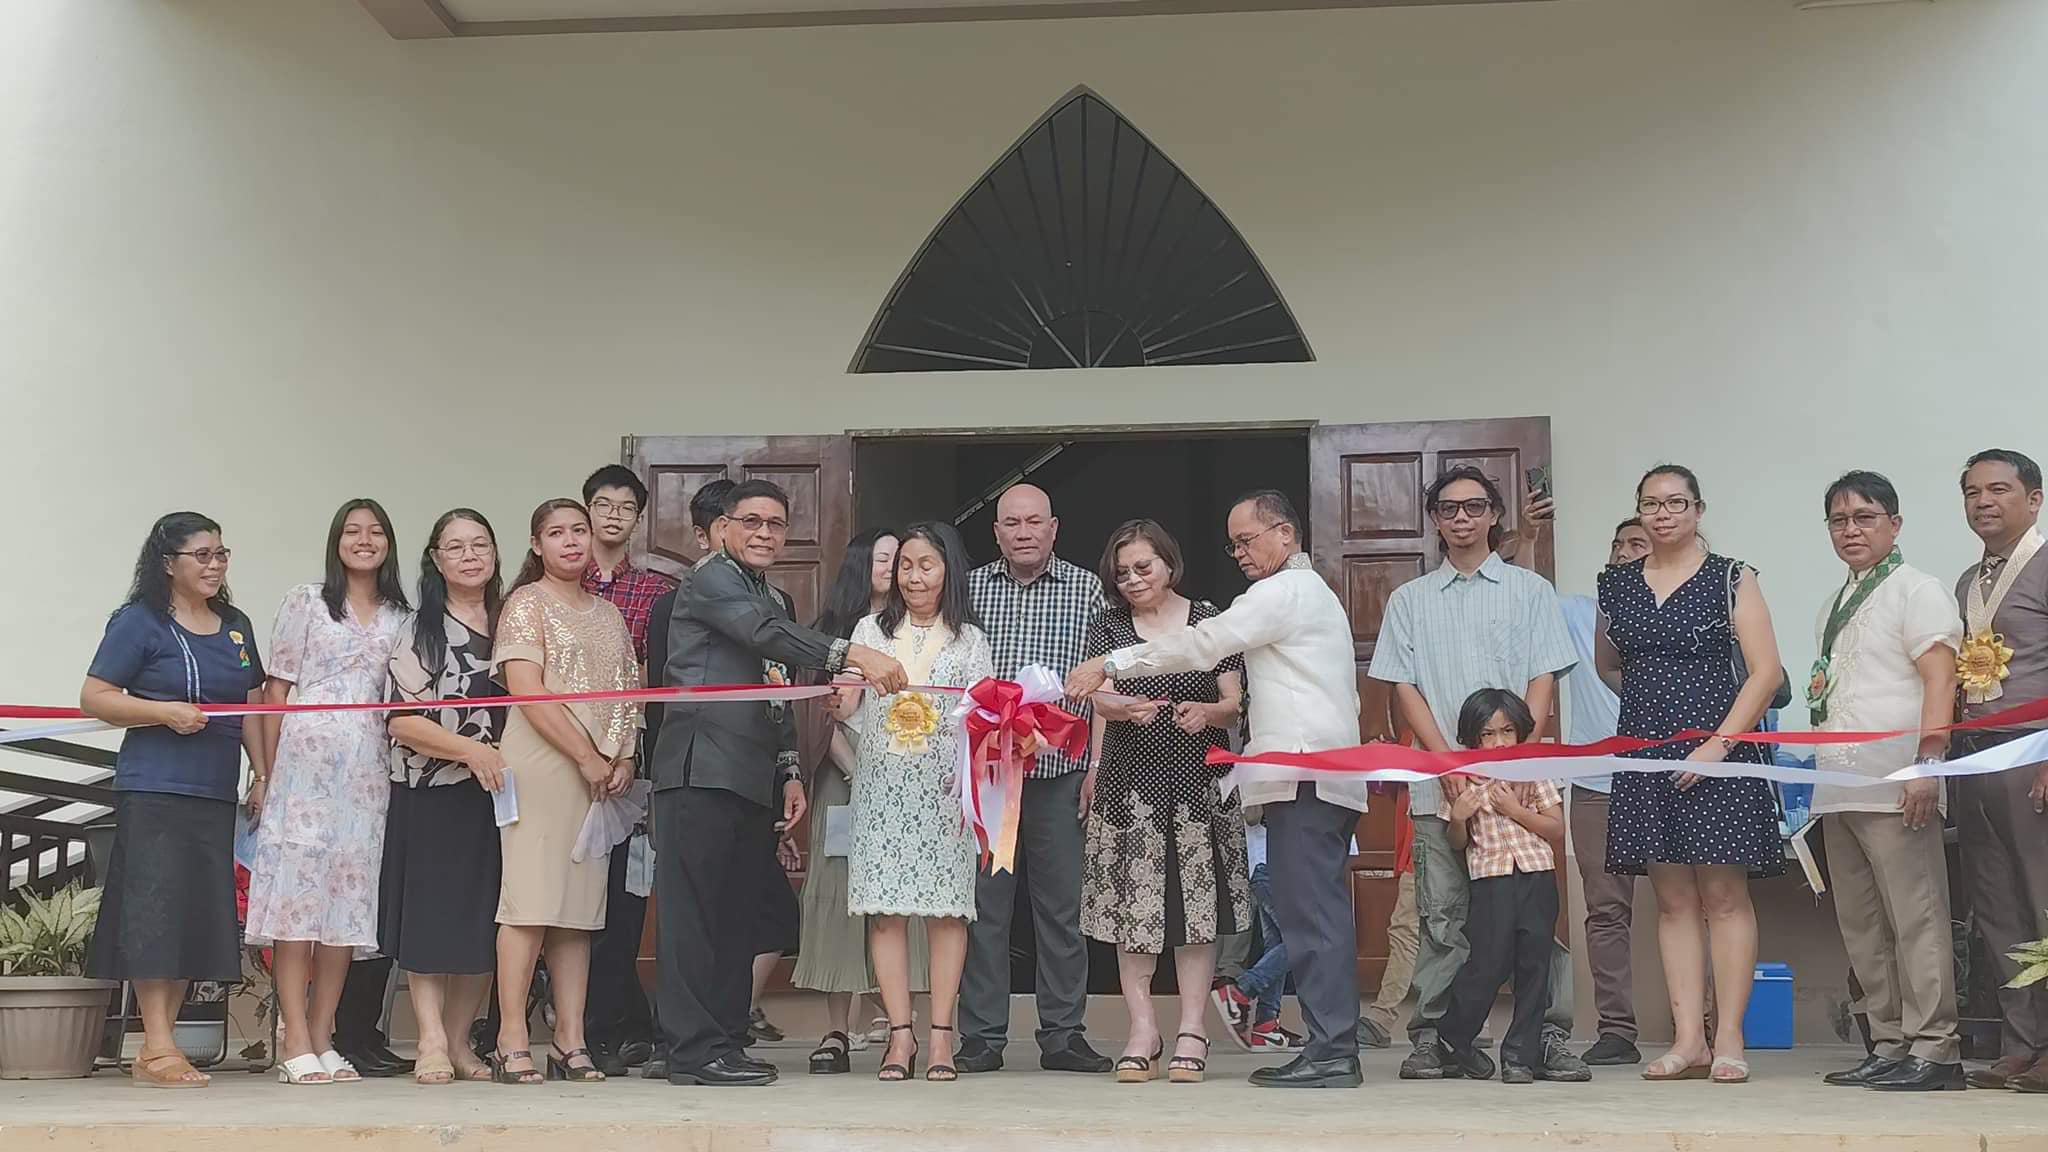 DM, SePUM Inaugurates Garcia Memorial Church